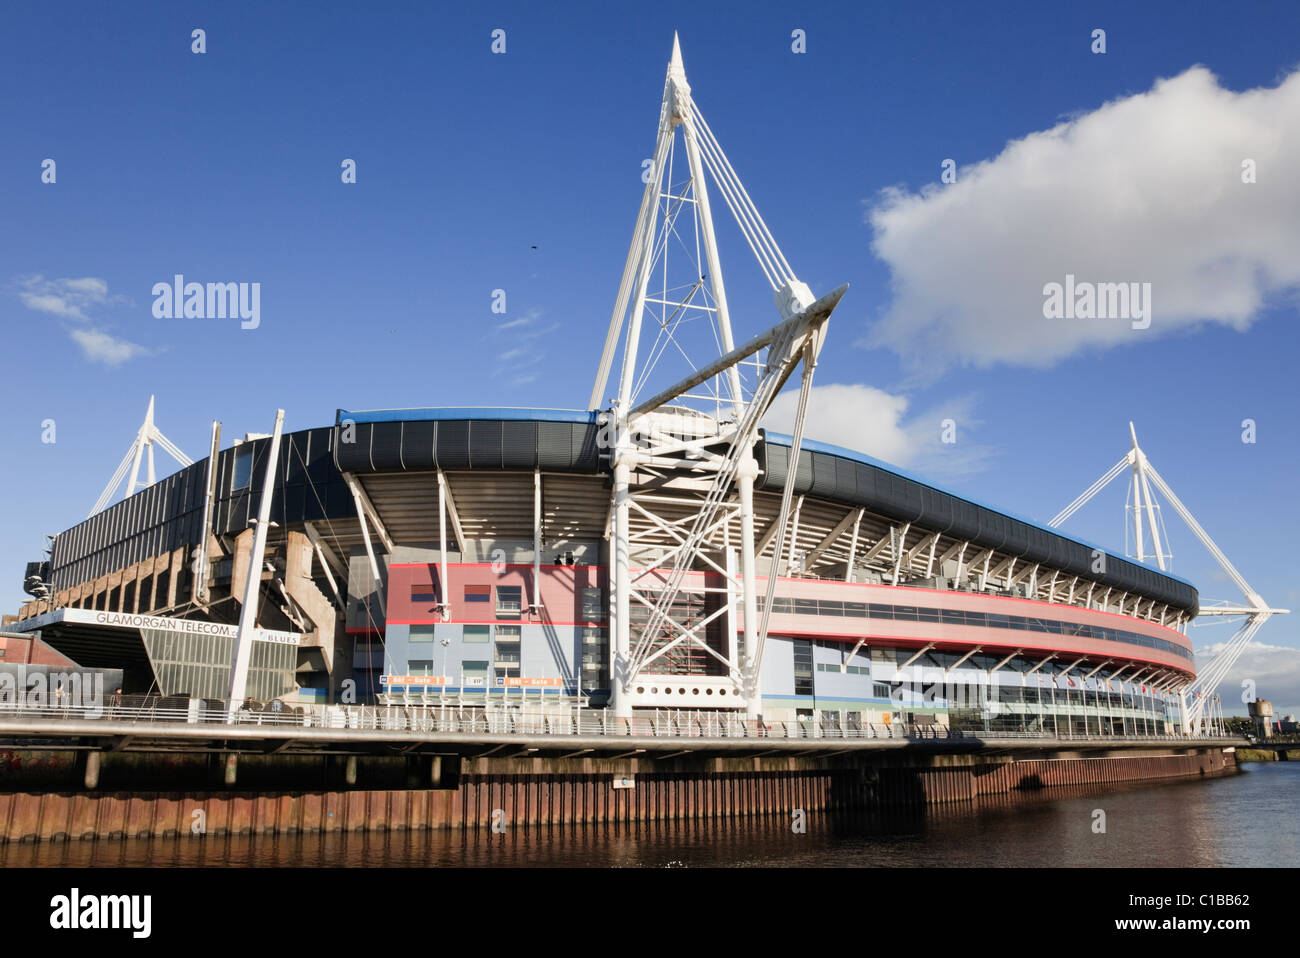 Fürstentum Stadion Welsh national Fußball und Rugby Veranstaltungsort. Cardiff (Caerdydd), Glamorgan, South Wales, UK, Großbritannien. Stockfoto